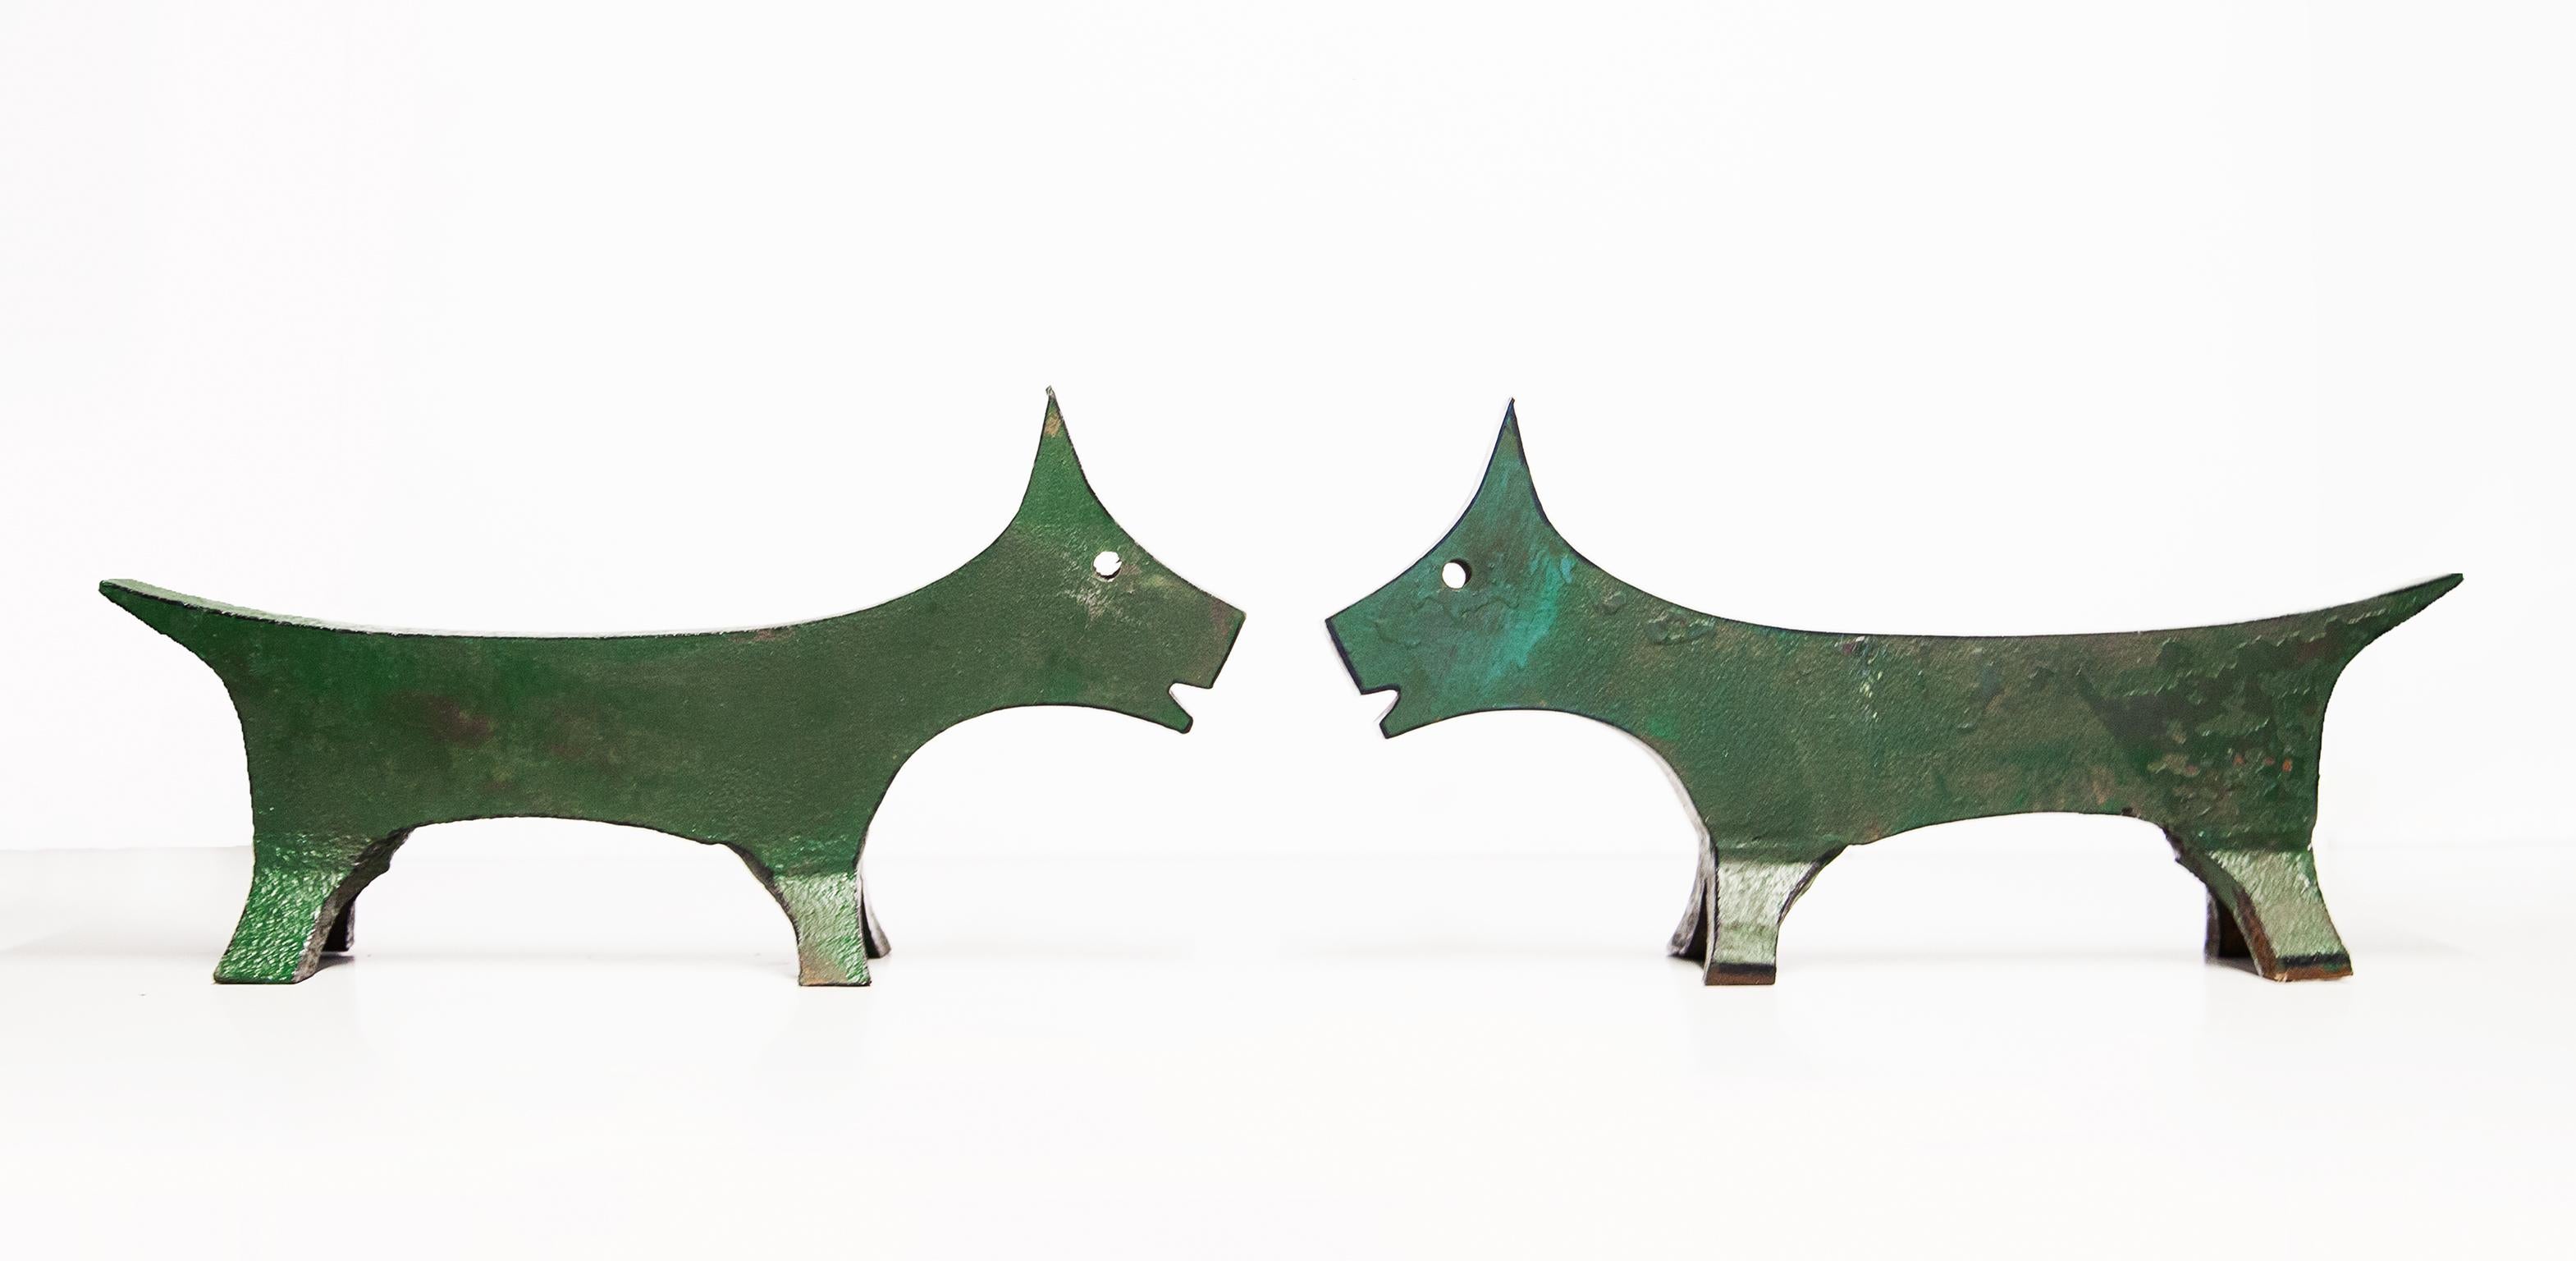 Wunderschönes Set aus zwei Hunde-Andirons aus massivem, grün lackiertem Eisen. Sie wurden in einem Film von Pedro Almodovar verwendet.
